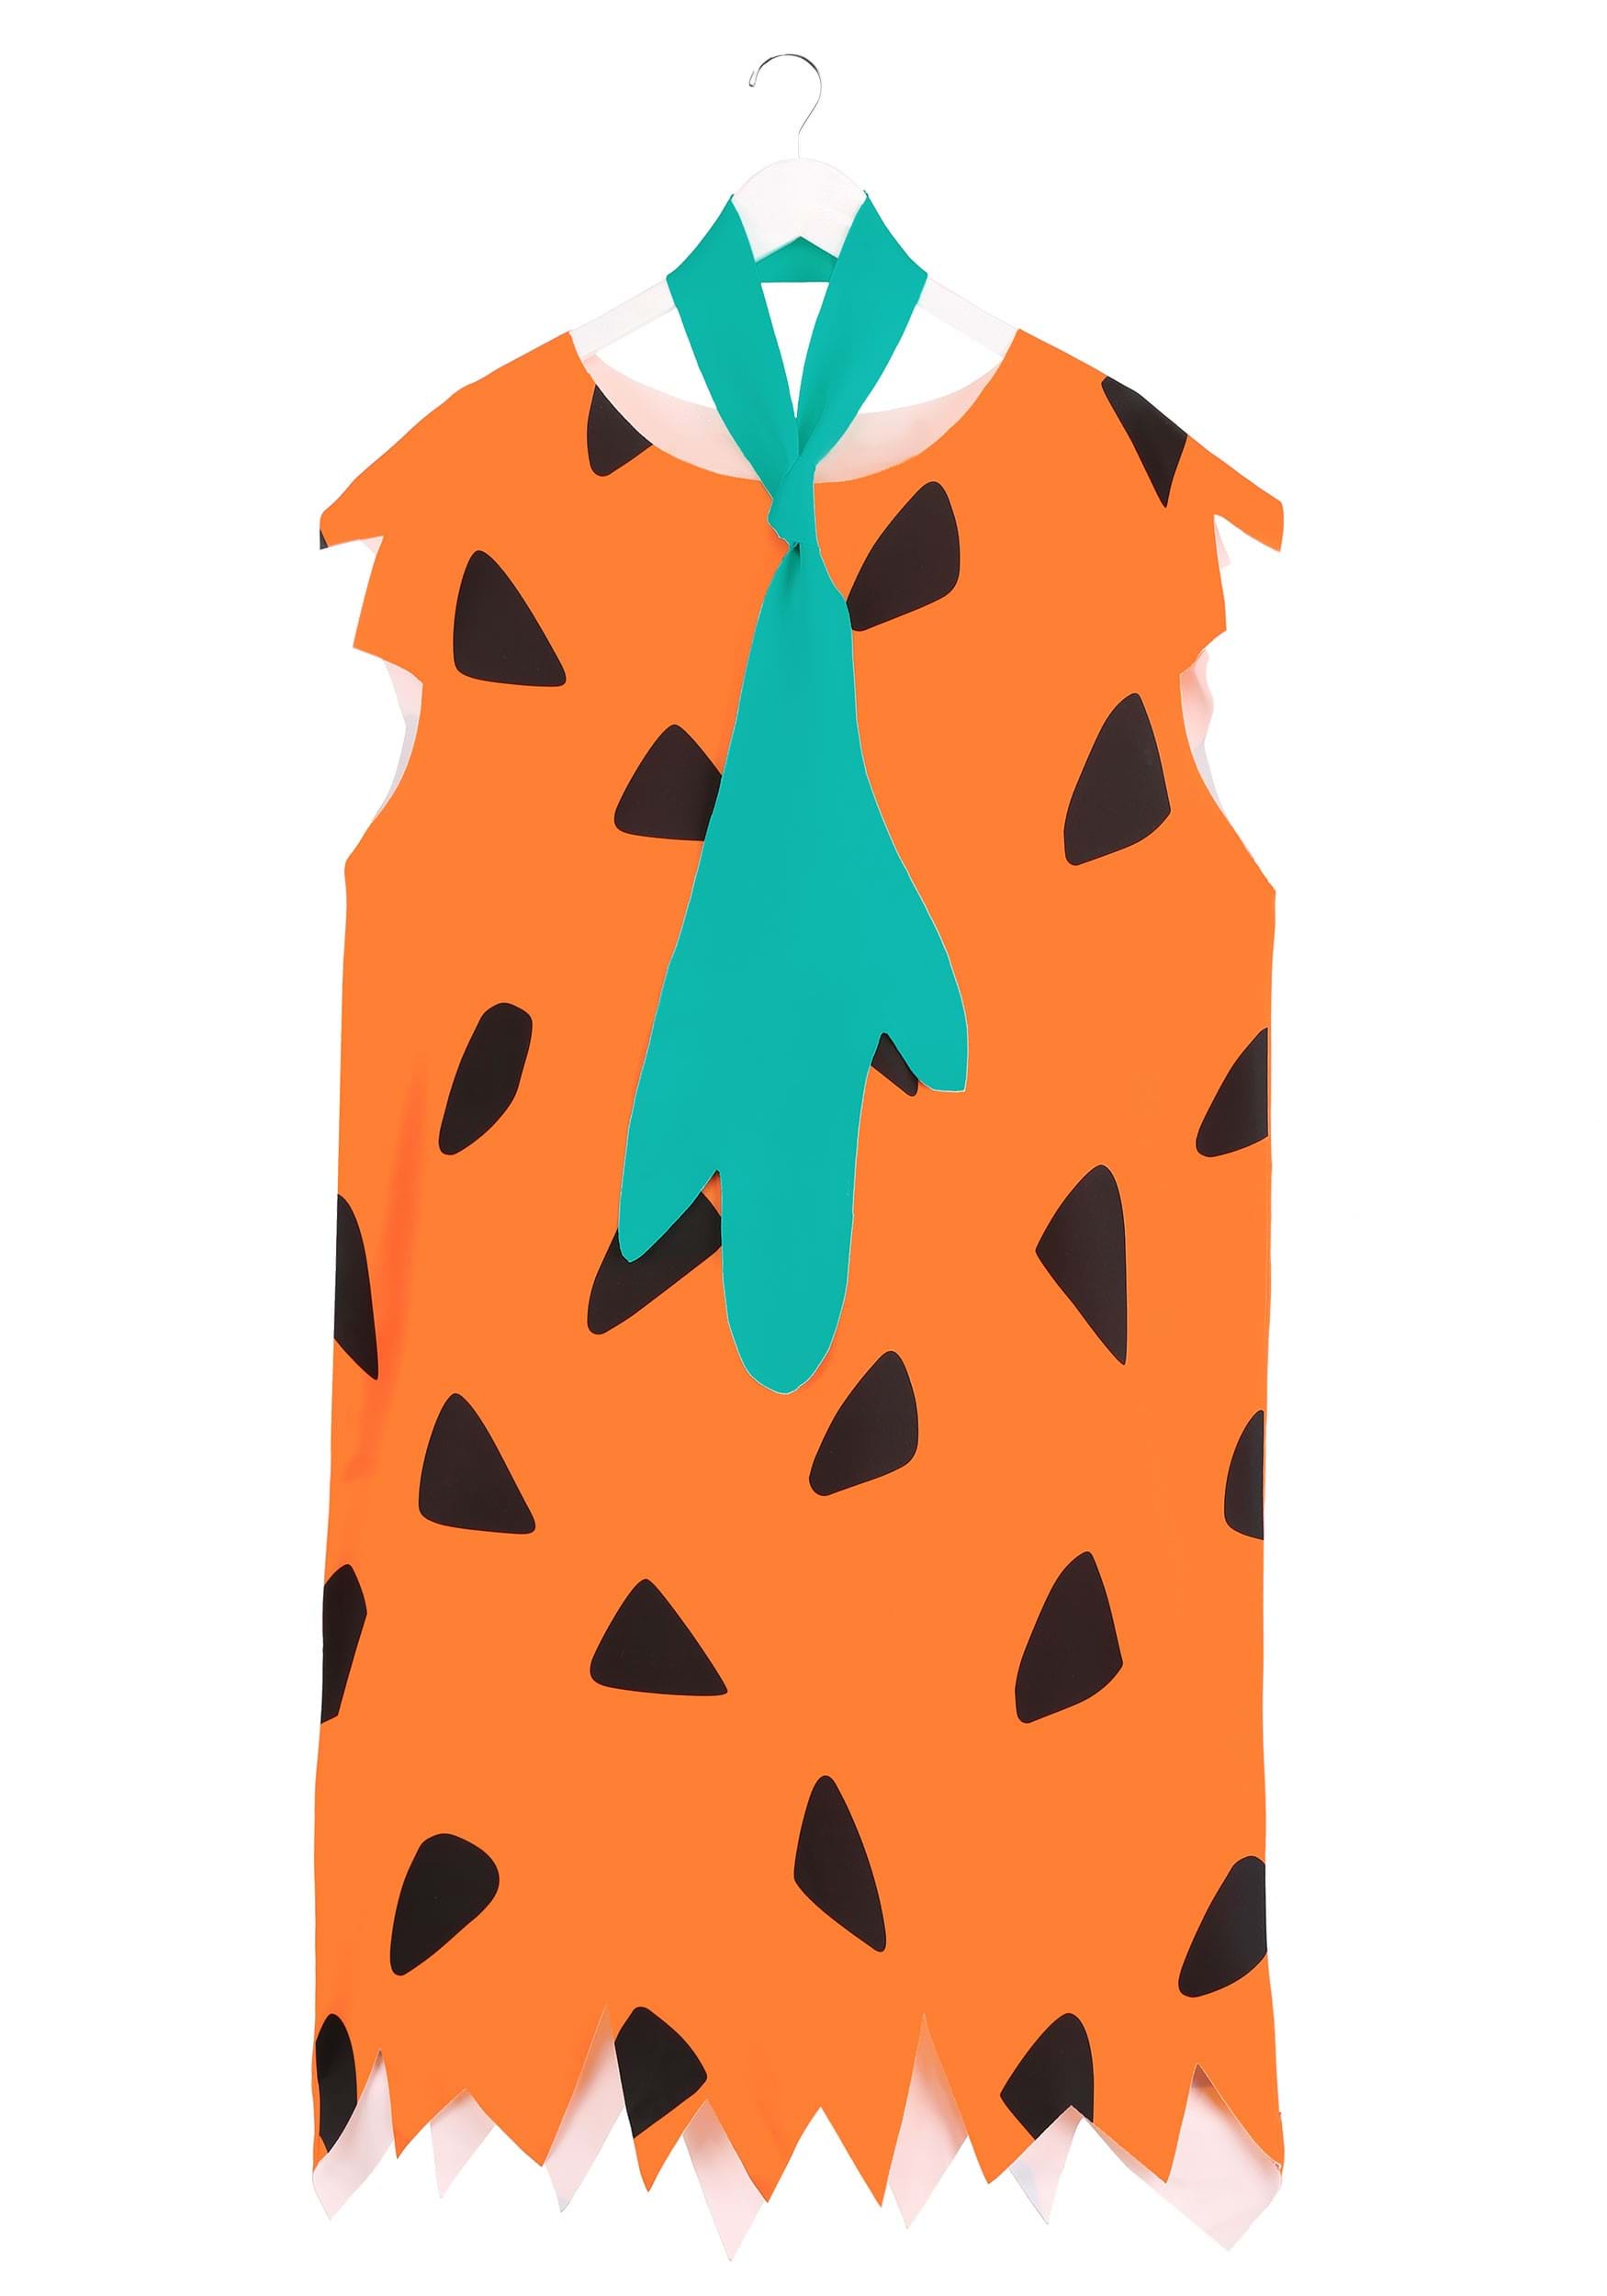 Adult Flintstones Fred Flintstone Fancy Dress Costume